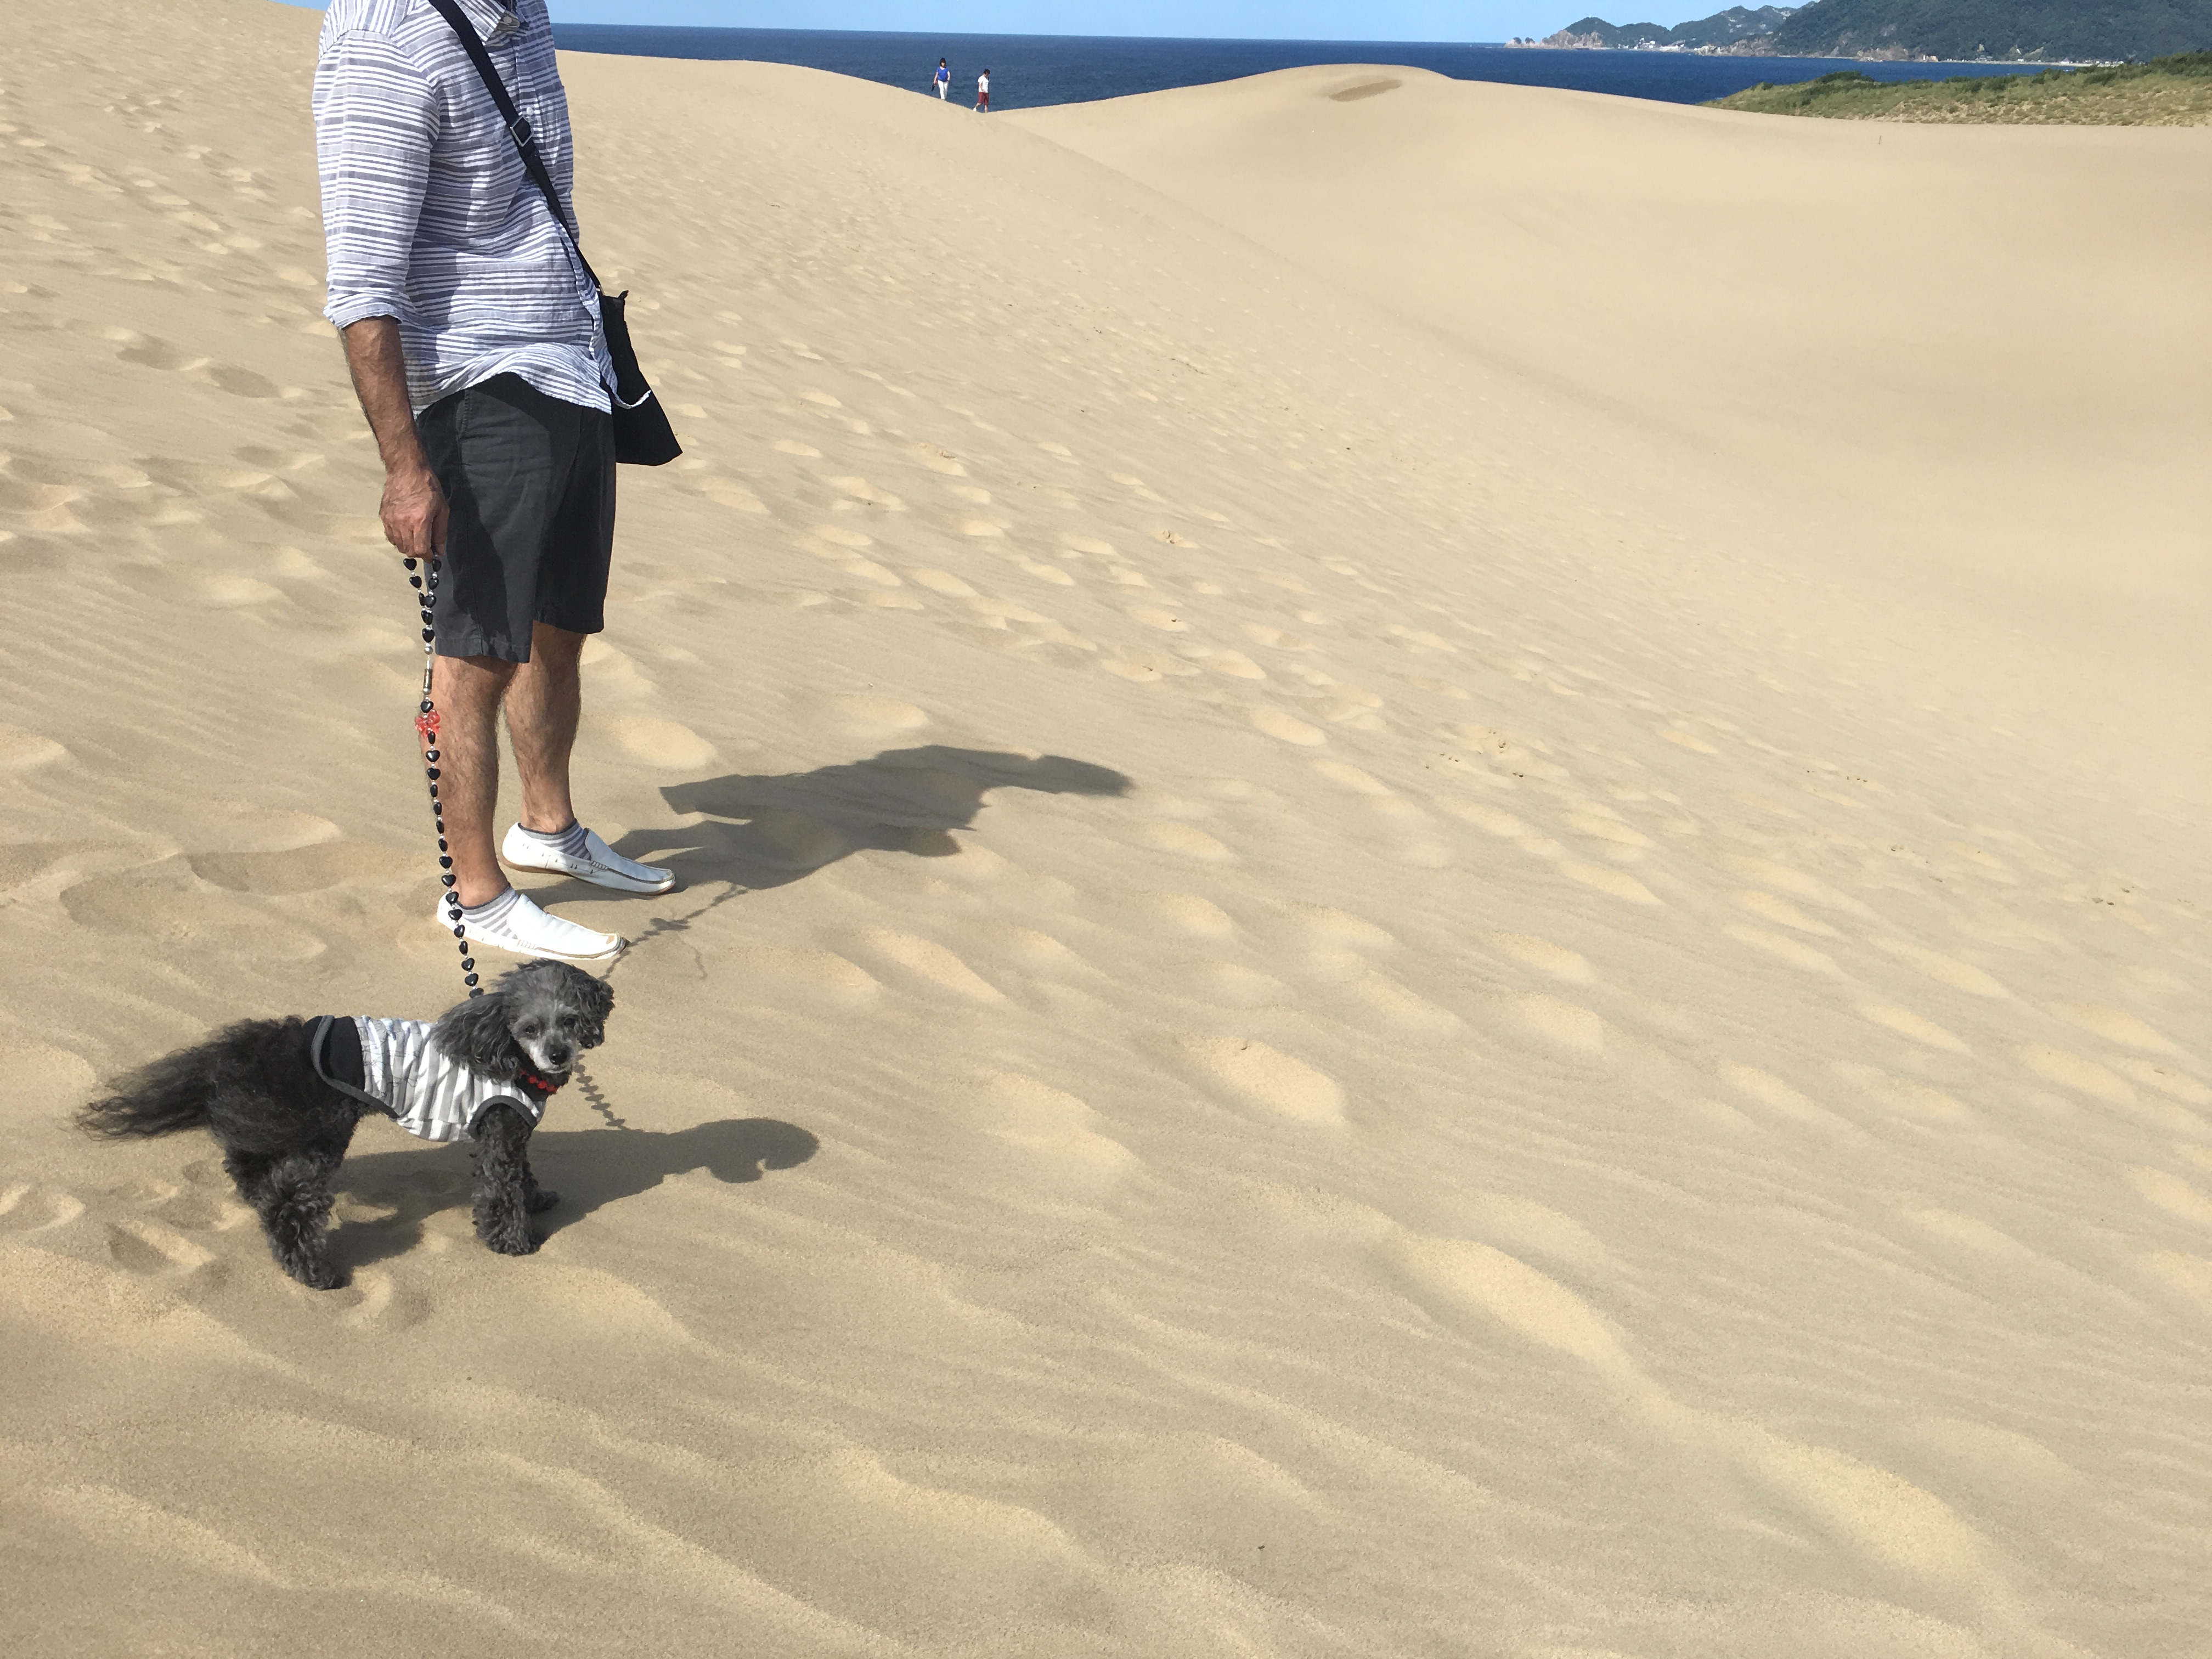 鳥取砂丘をペットと楽しもう 周辺のオススメ観光スポットも いぬドコー愛犬との想い出作りにドコ行こう